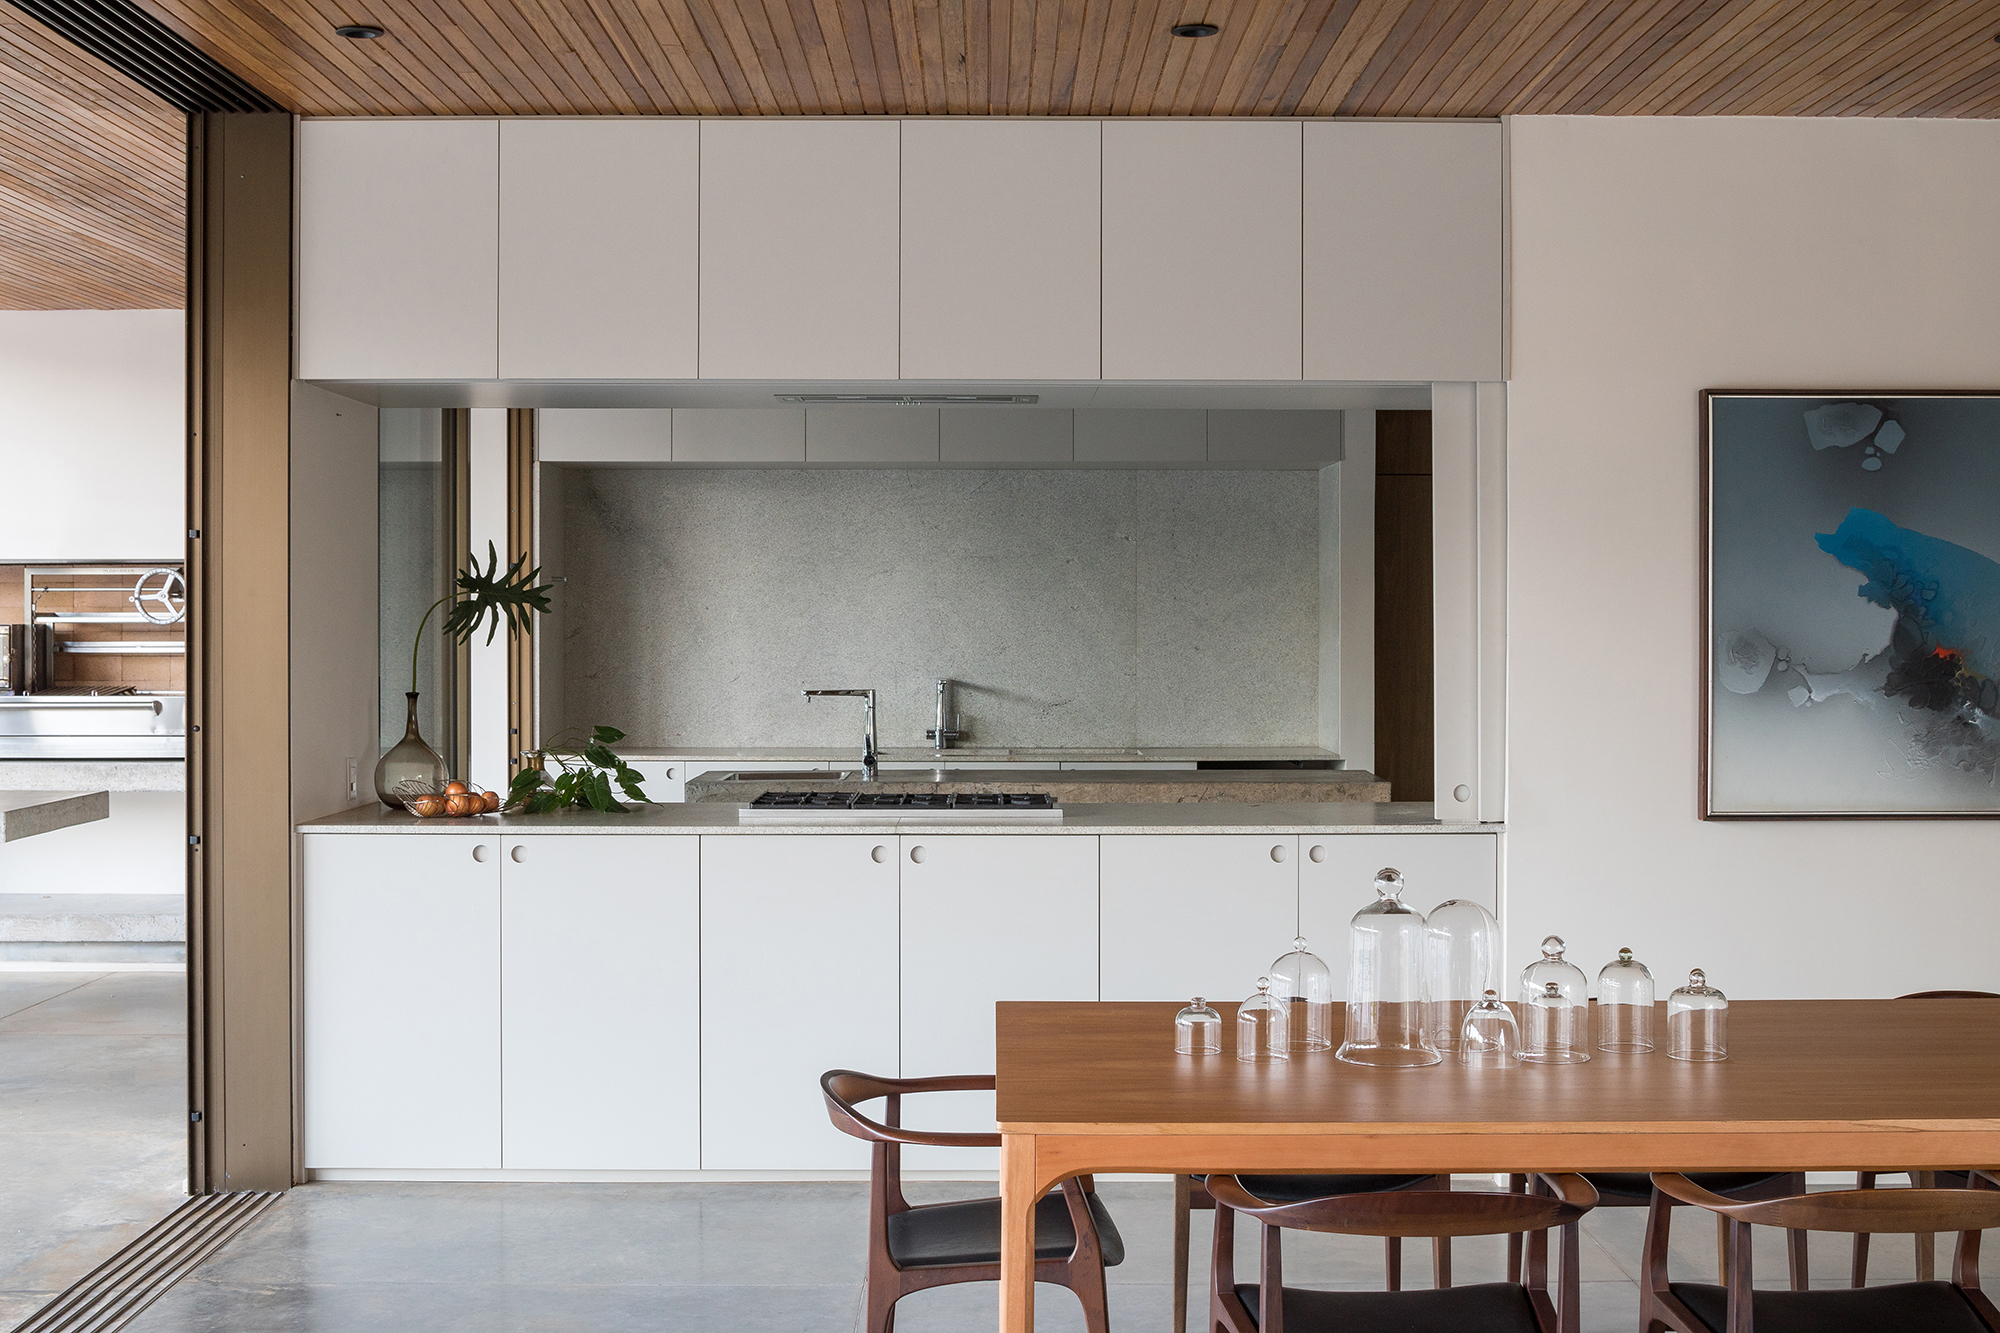 Dois volumes sobrepostos compõem esta casa de 500 m² em Brasília. Projeto de Bloco Arquitetos. Na foto, cozinha com bancada de concreto e armários.